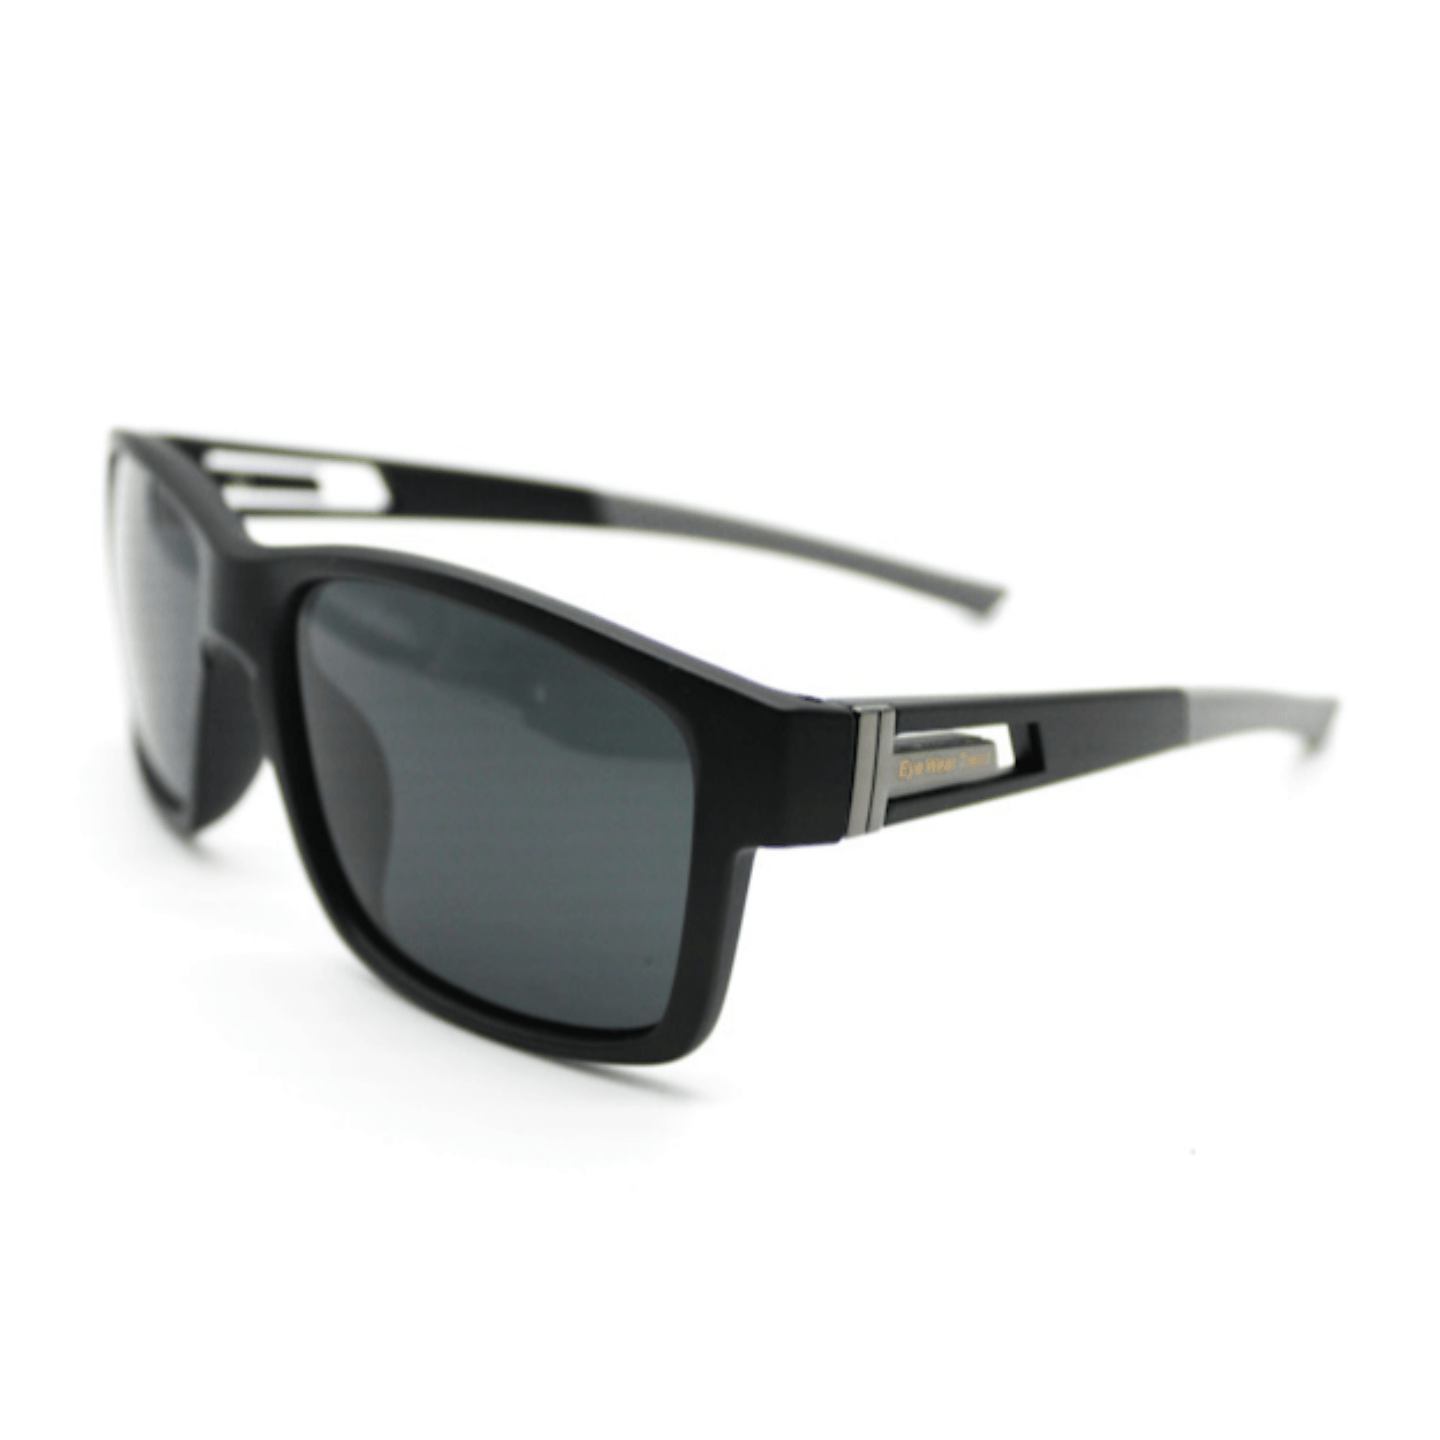 Black Gray Sunglasses For Men and Women